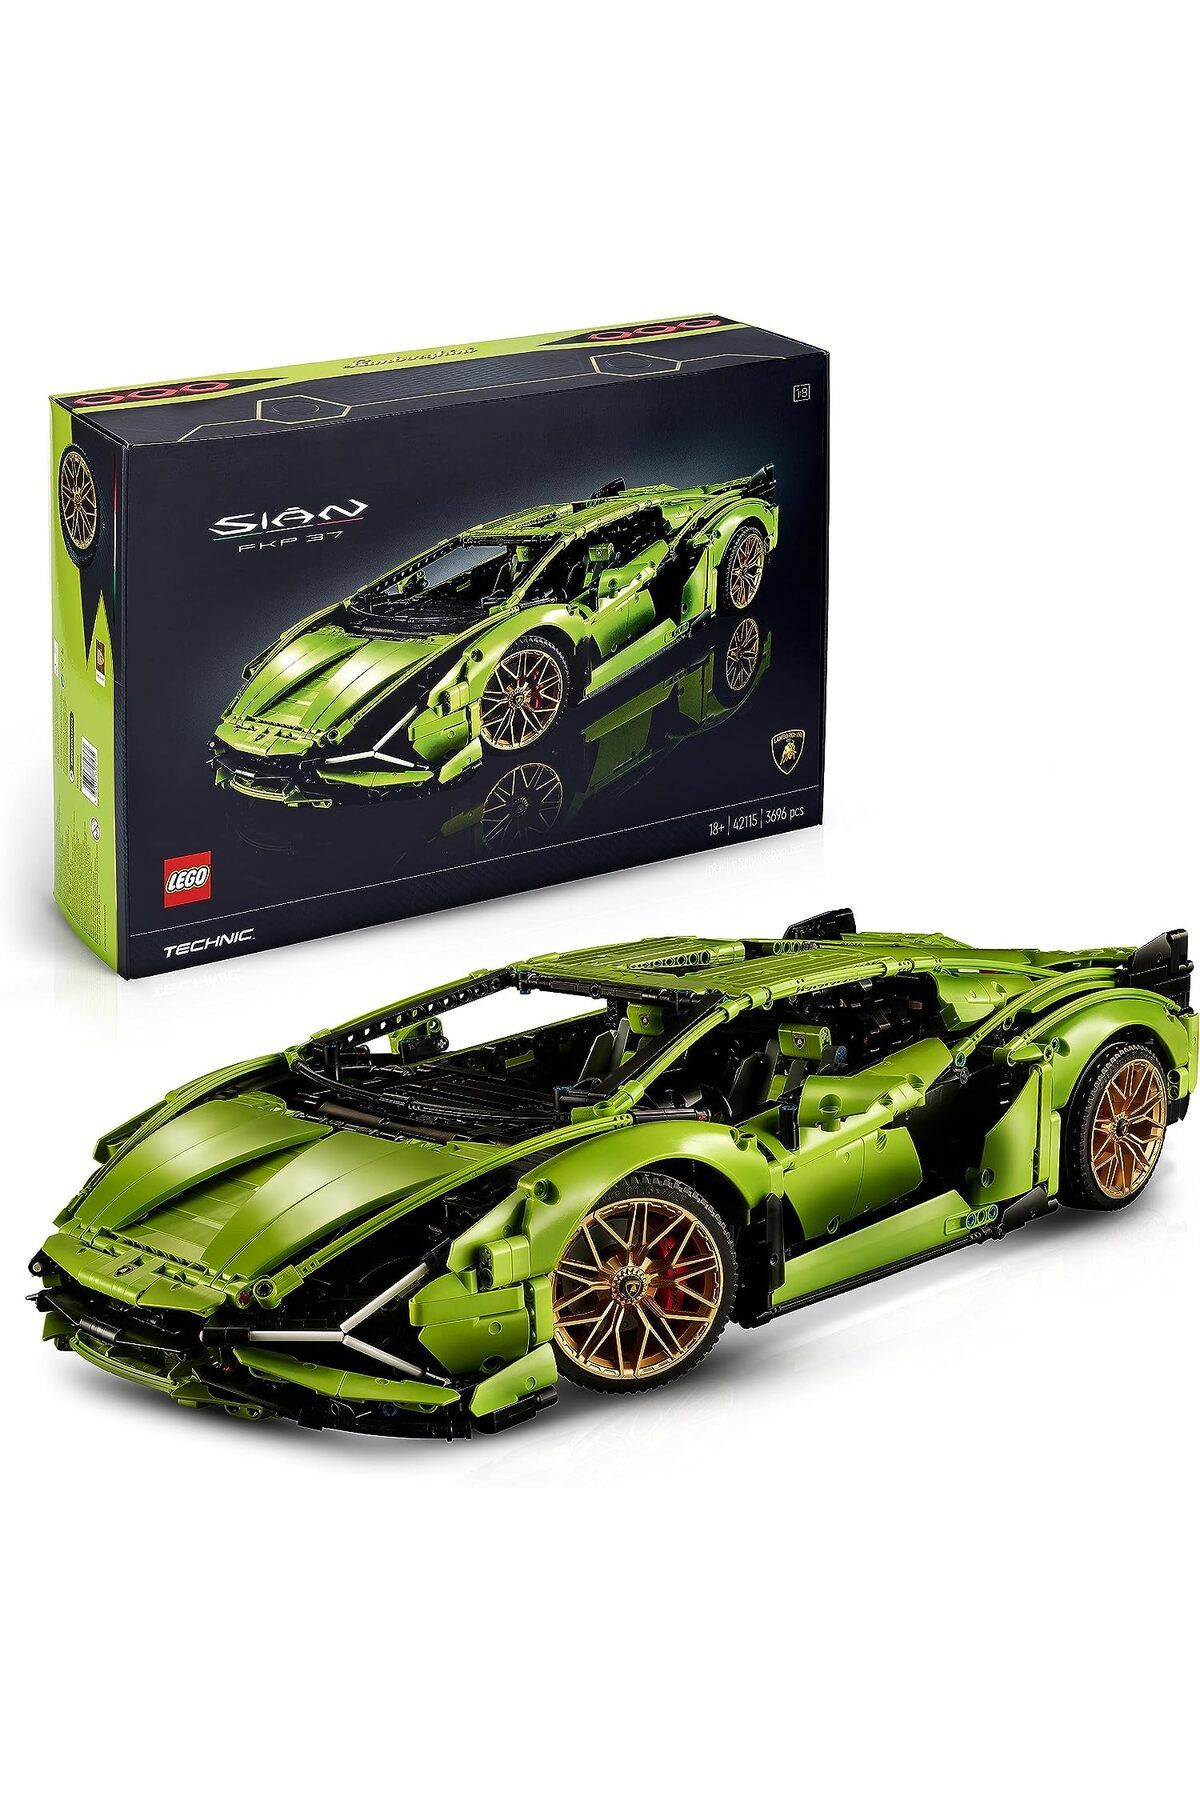 LEGO ® Technic Lamborghini Sián FKP 37 (42115) -Yetişkinler İçin Koleksiyonluk Yapım Seti(3696 Parça)